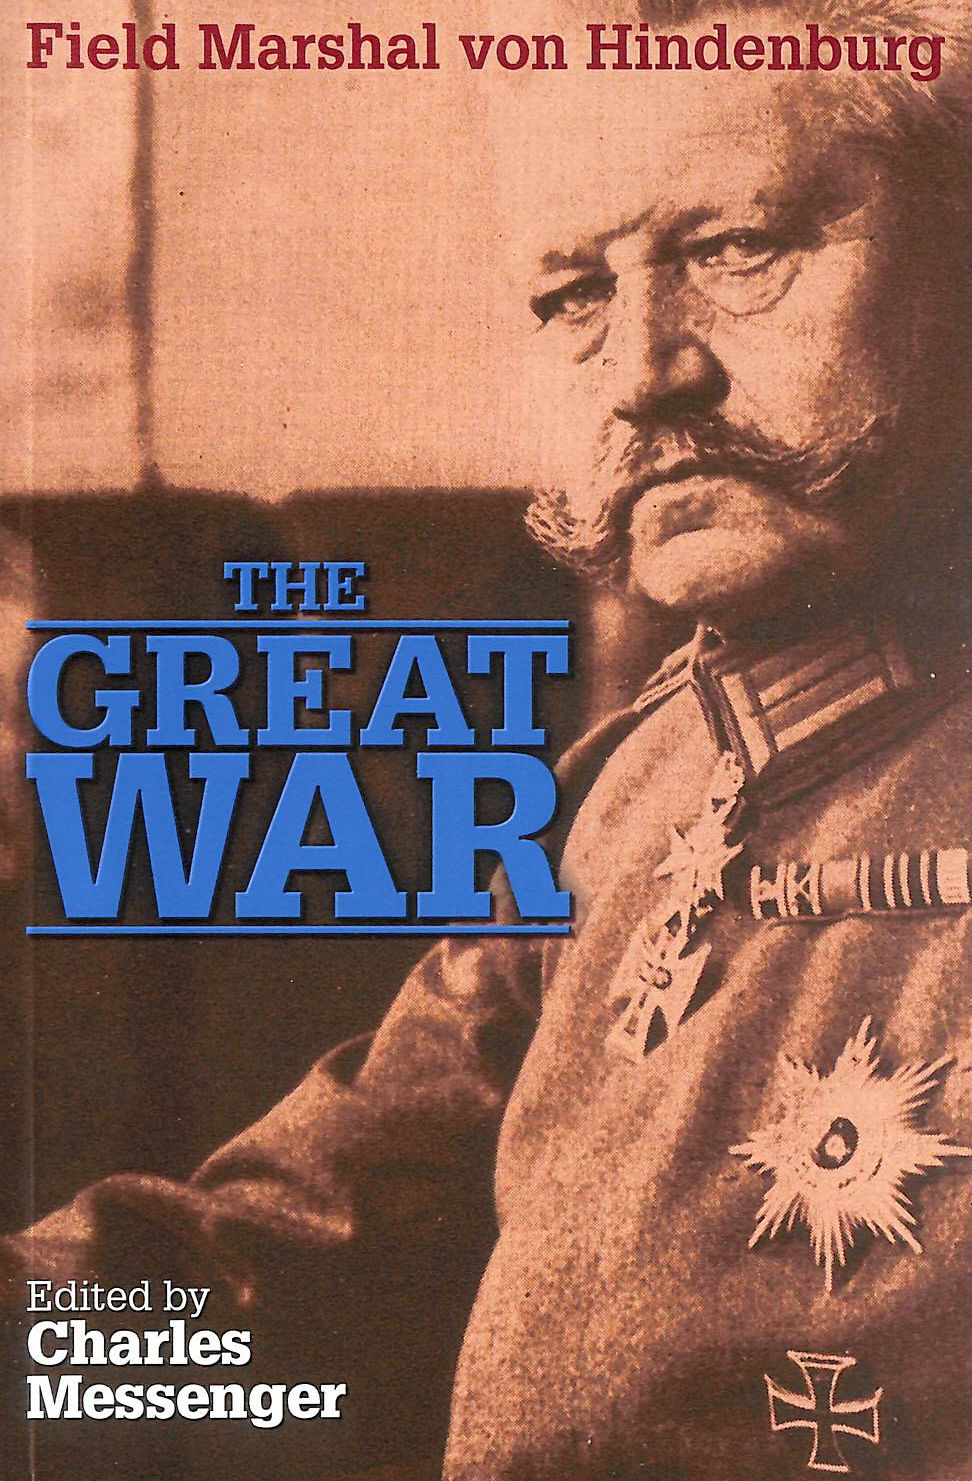 FIELD MARSHAL VON HINDENBERG; CHARLES MESSENGER [EDITOR] - The Great War